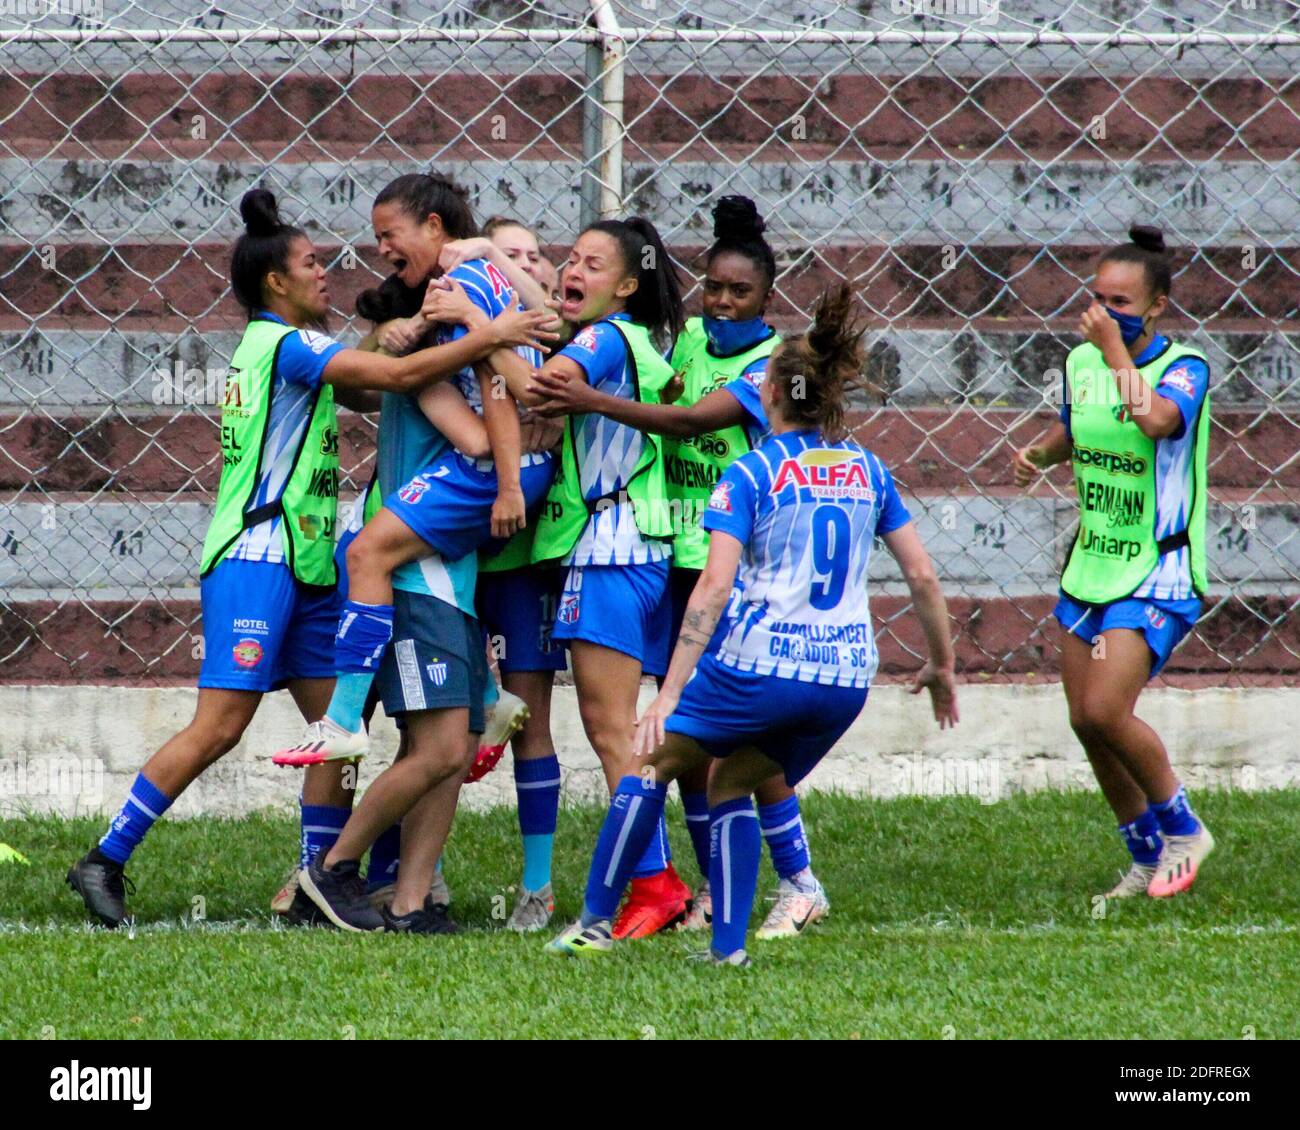 Sao Paulo, Sao Paulo, Brasil. 6 de diciembre de 2020. (SPO) Liga de fútbol femenino segunda división. 6 de diciembre de 2020, Sao Paulo, de fútbol entre la